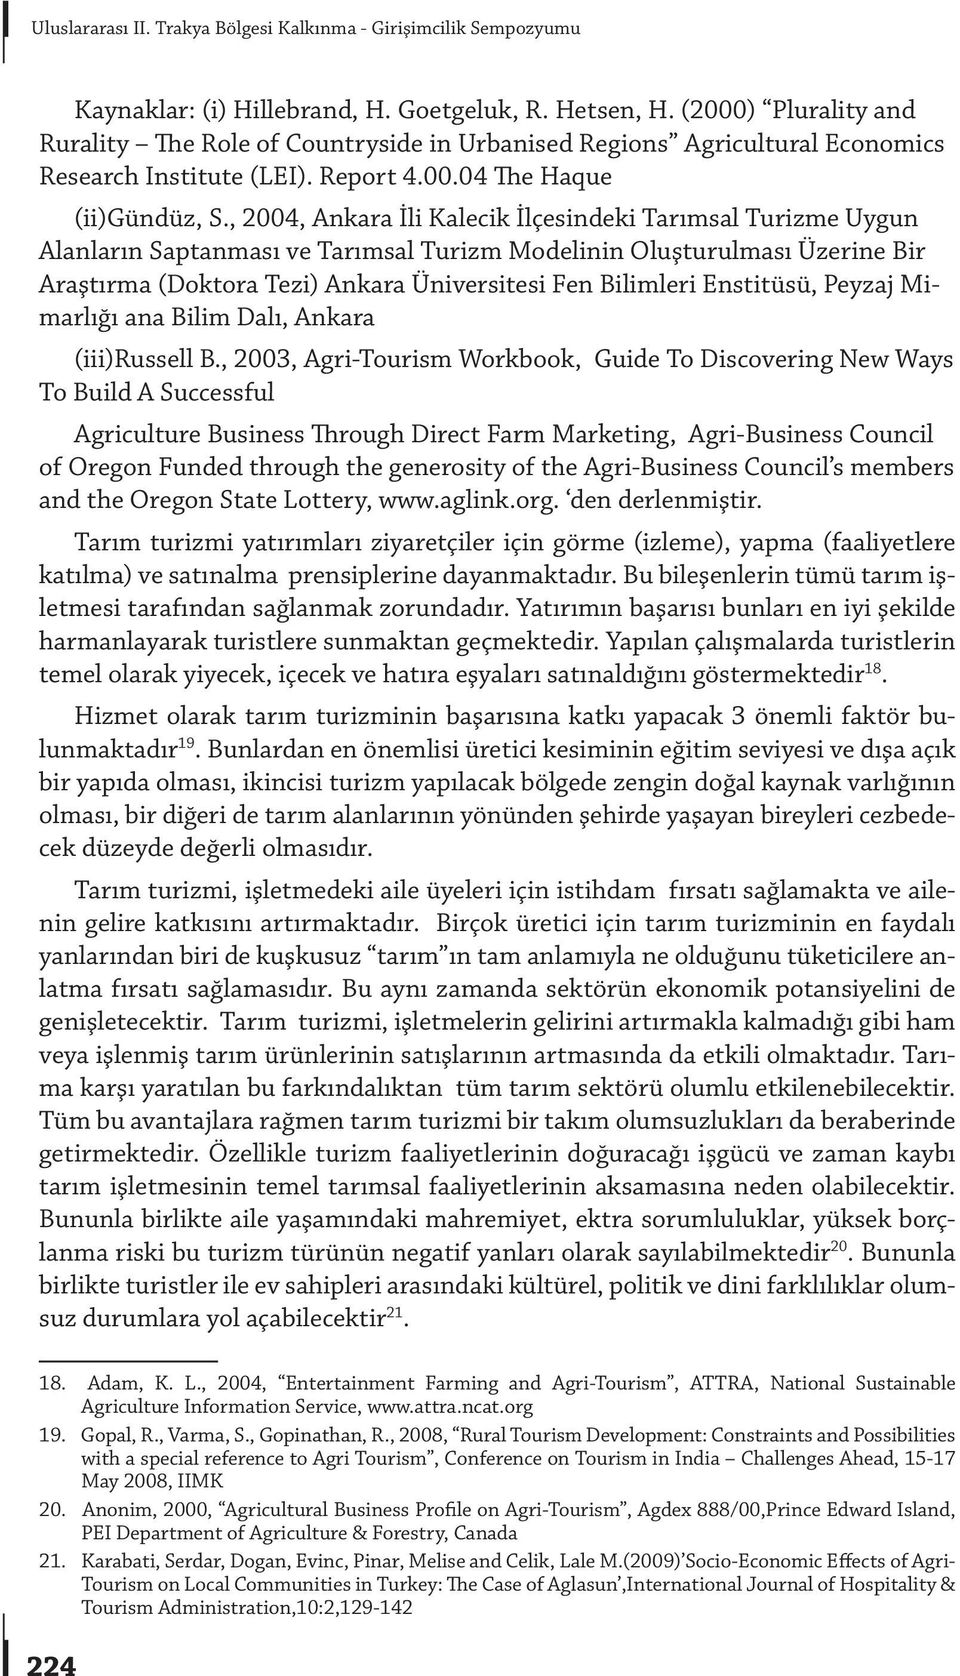 , 2004, Ankara İli Kalecik İlçesindeki Tarımsal Turizme Uygun Alanların Saptanması ve Tarımsal Turizm Modelinin Oluşturulması Üzerine Bir Araştırma (Doktora Tezi) Ankara Üniversitesi Fen Bilimleri